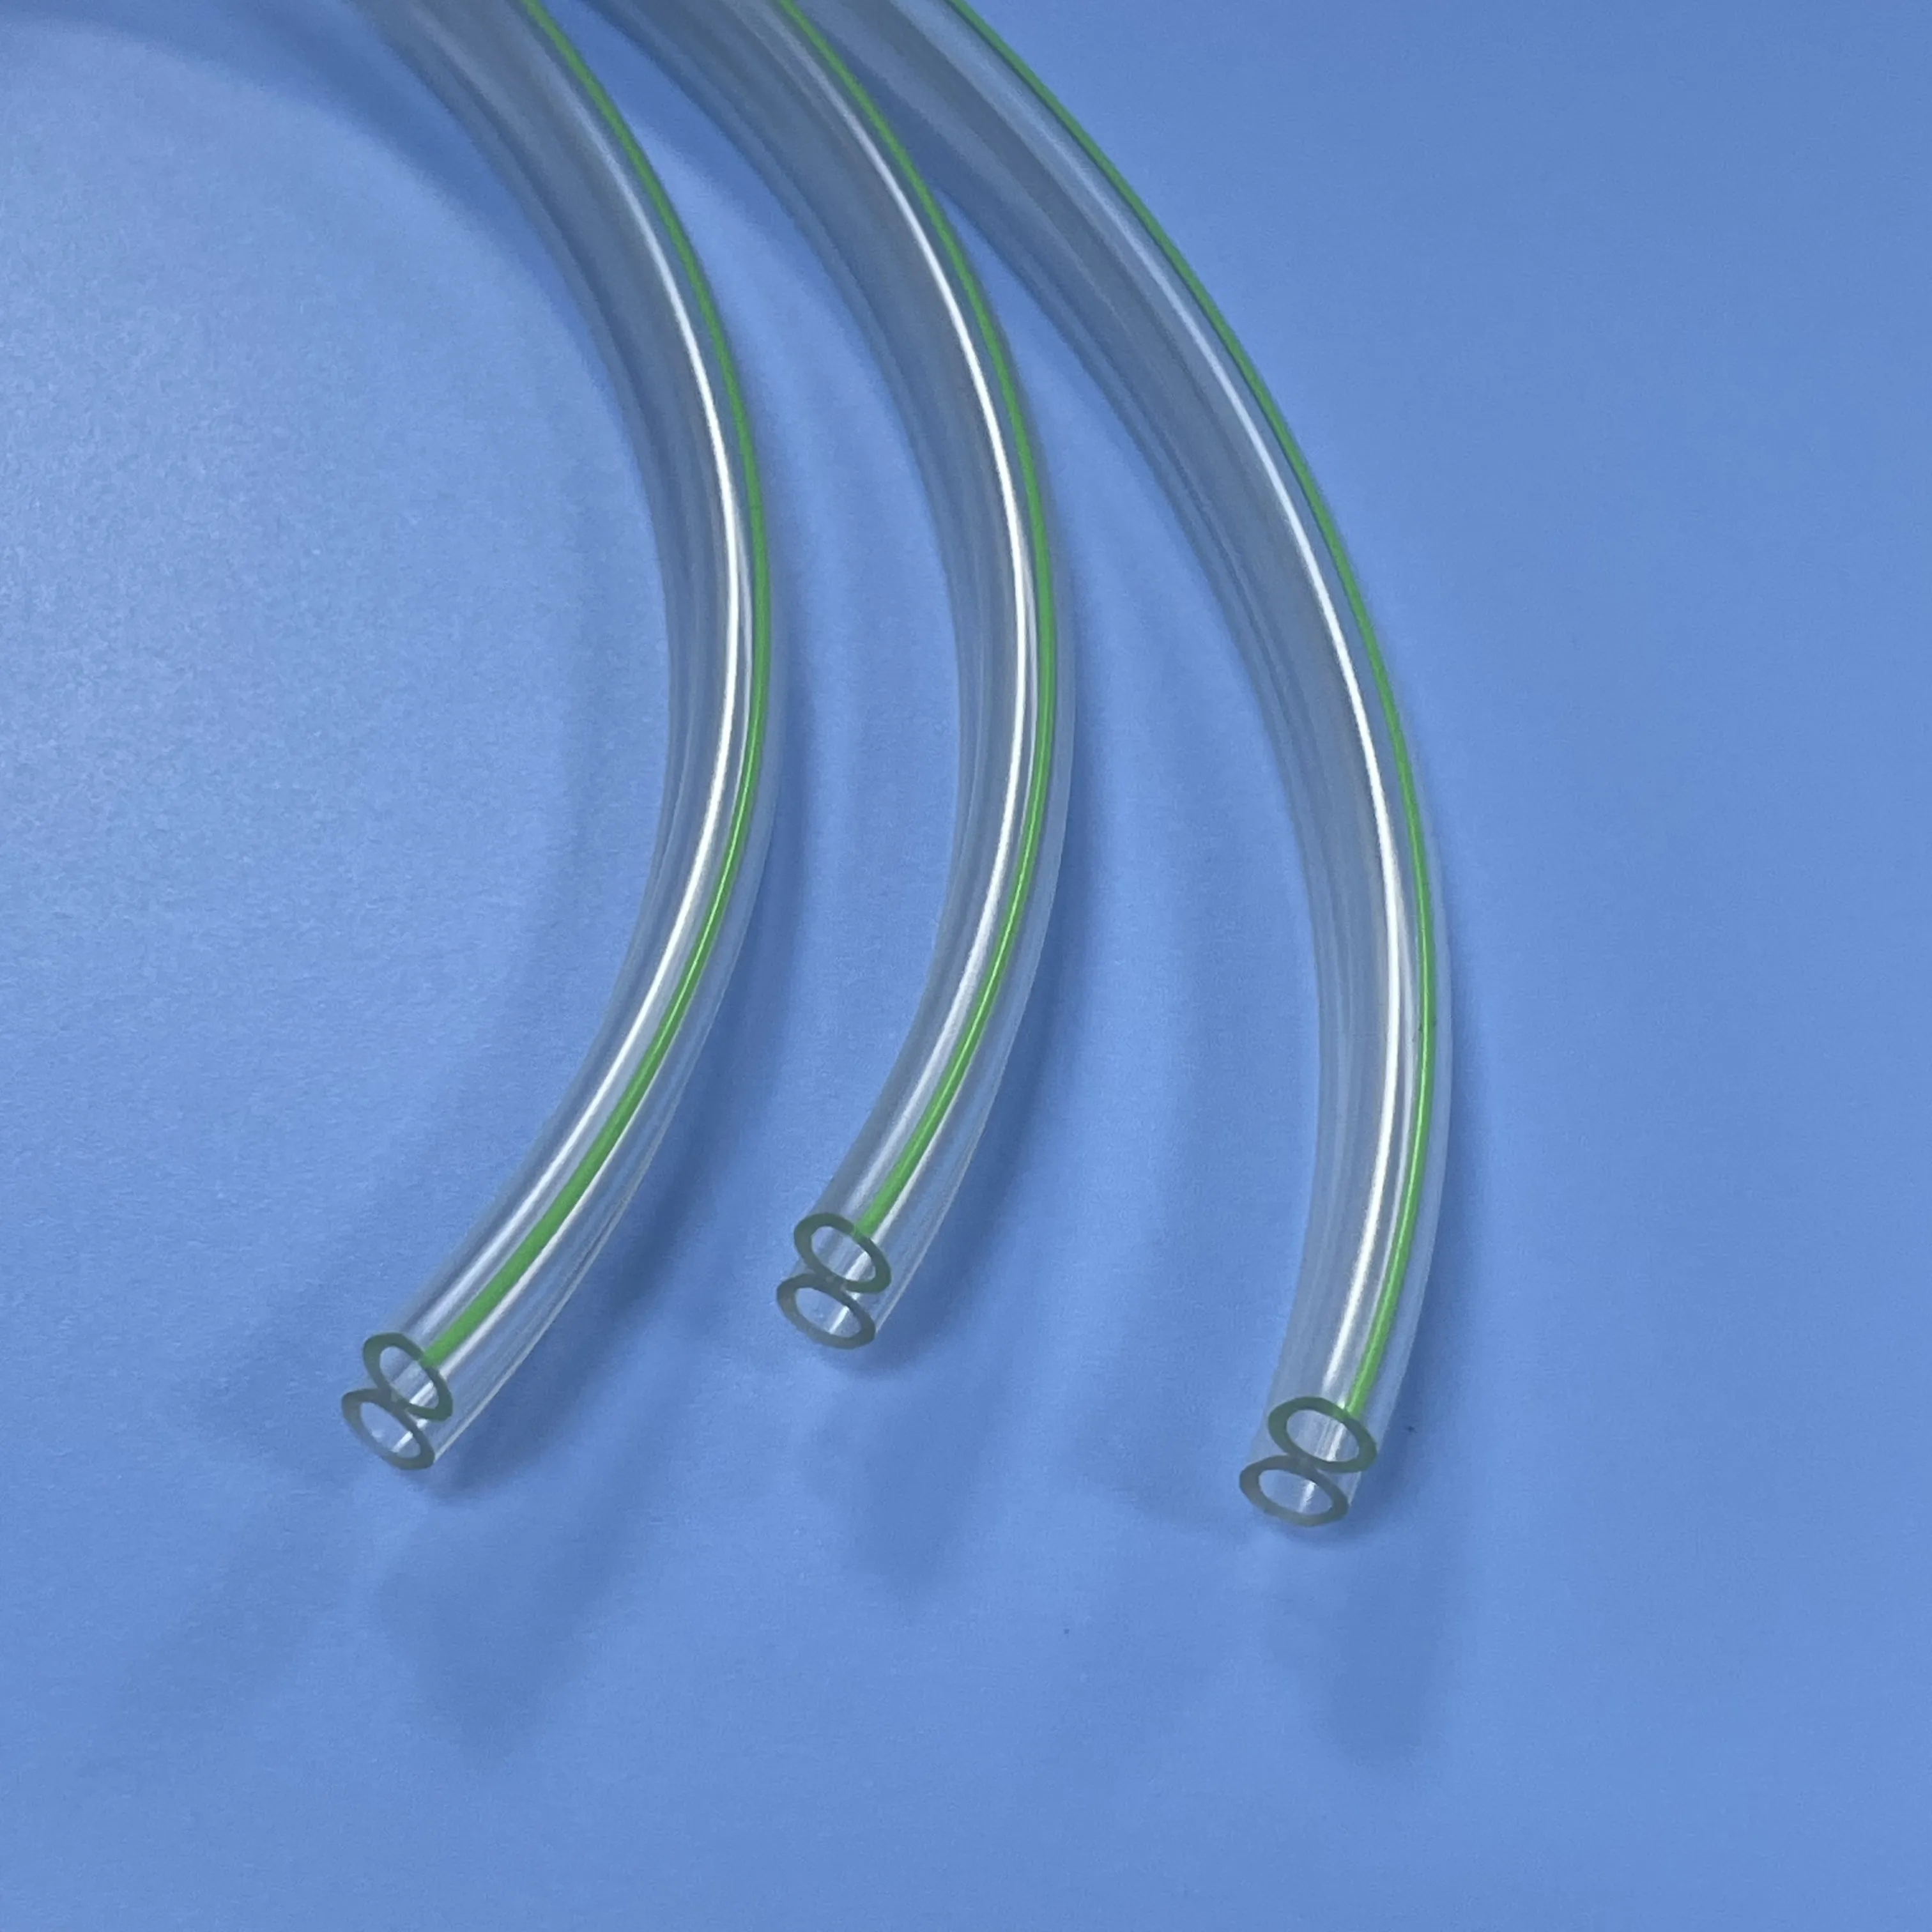 Su misura estrusione monouso in PVC morbido doppio canale tubi per sensore linea dispositivo medico accessorio